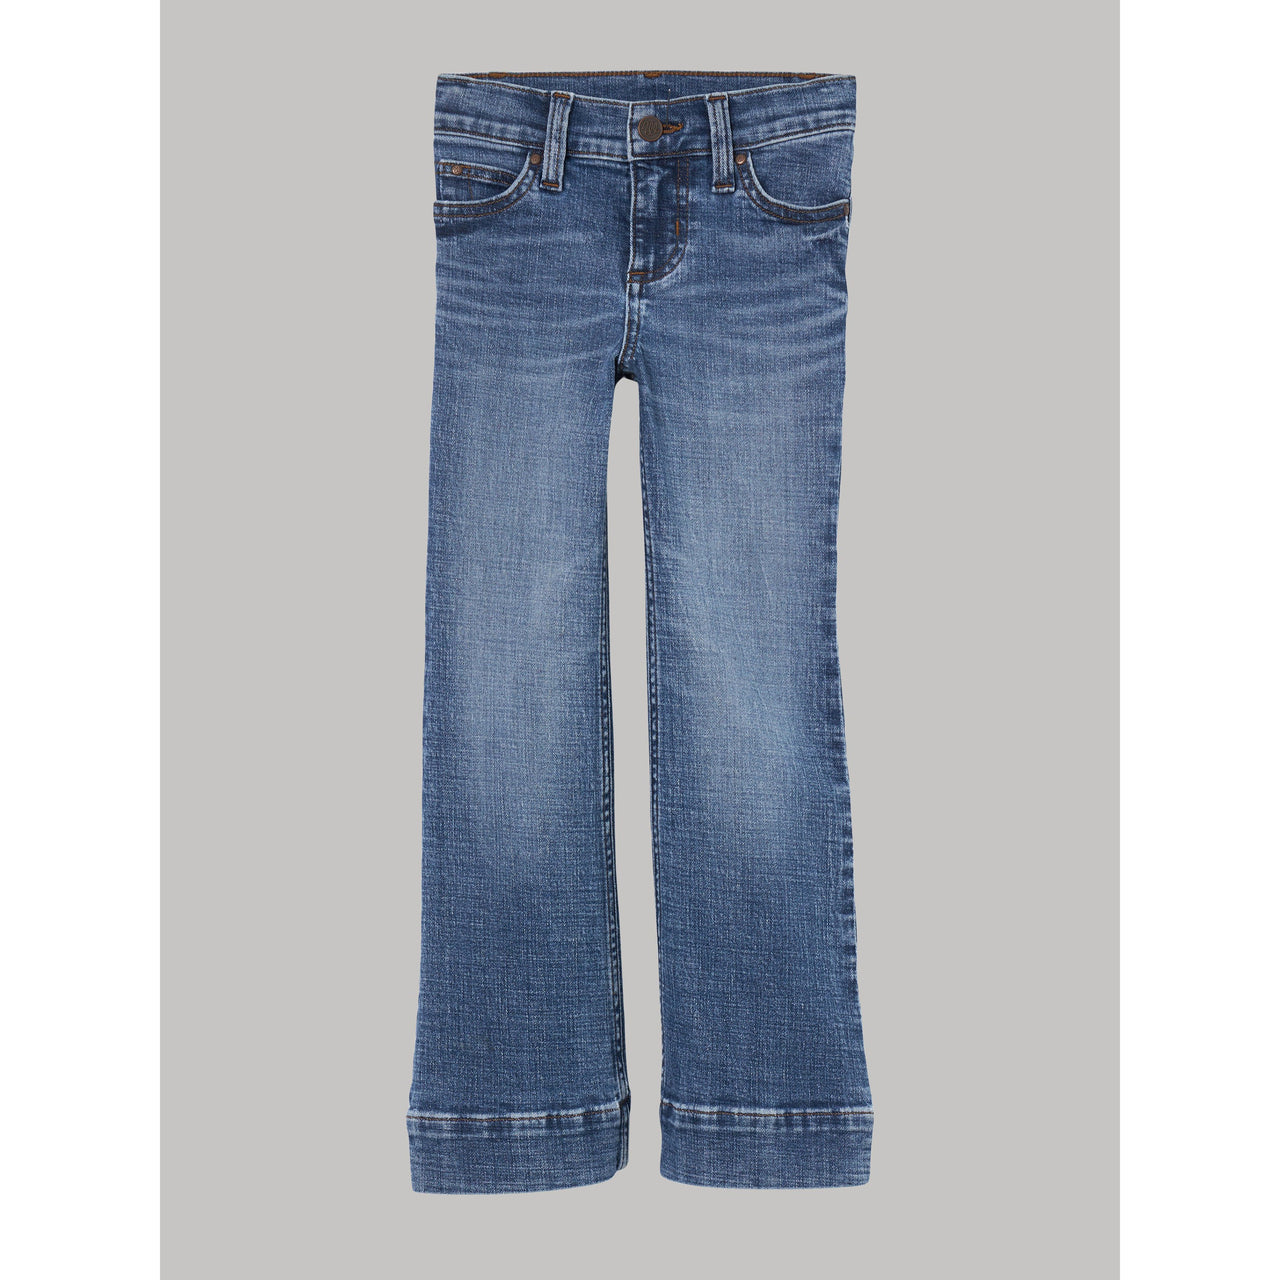 Wrangler Girl's Retro Bootcut Jeans - Embry